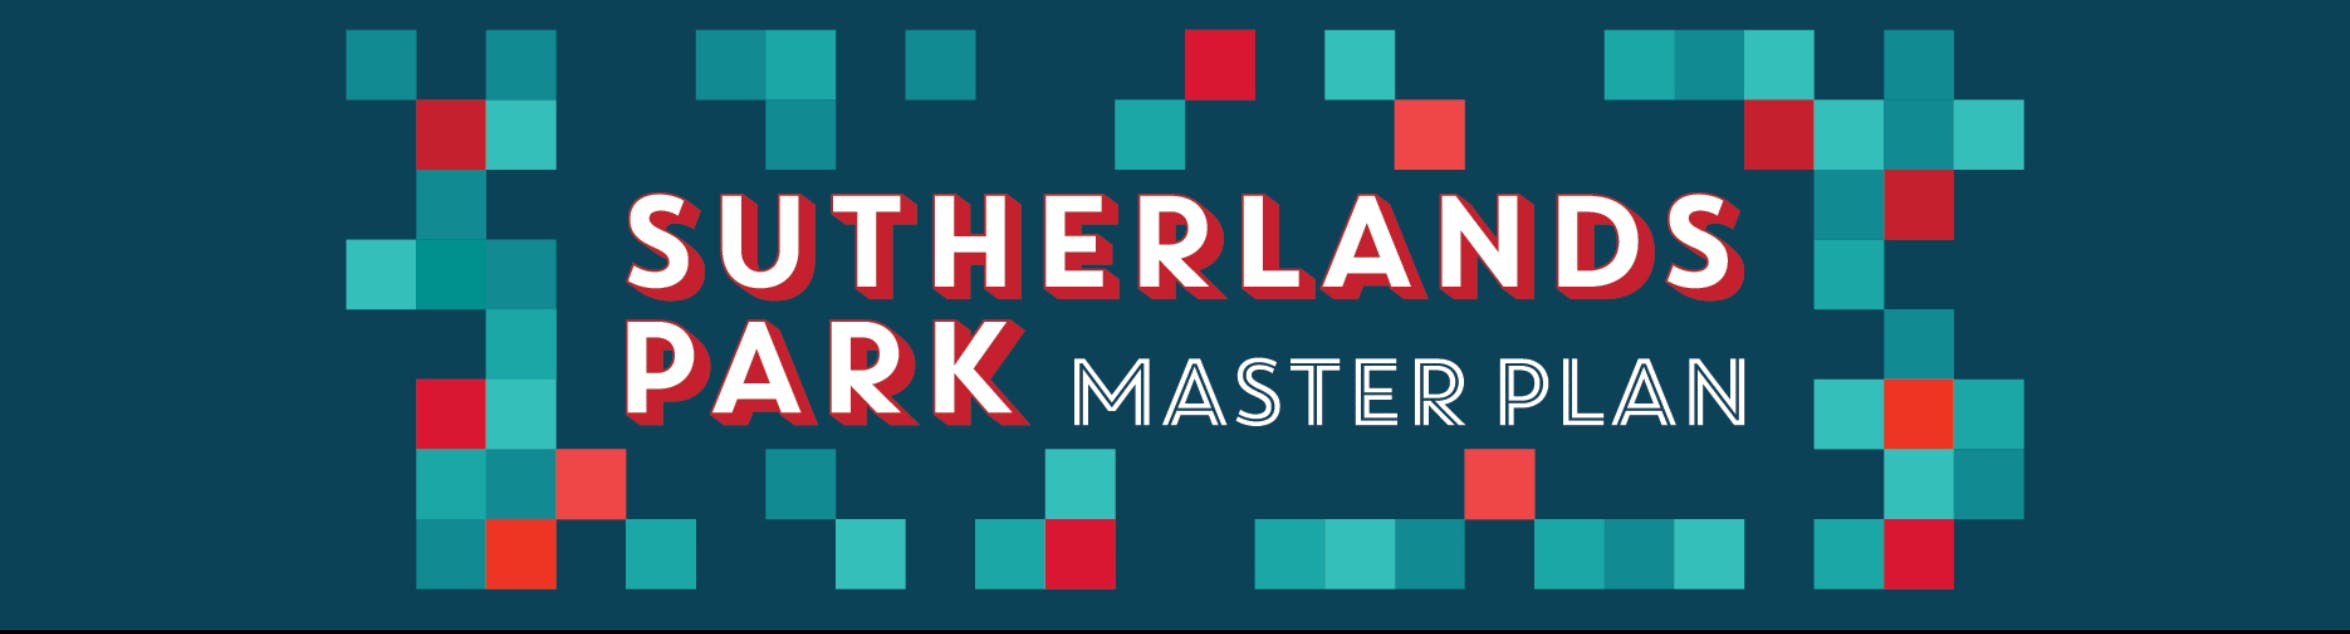 Sutherlands Park Master Plan logo